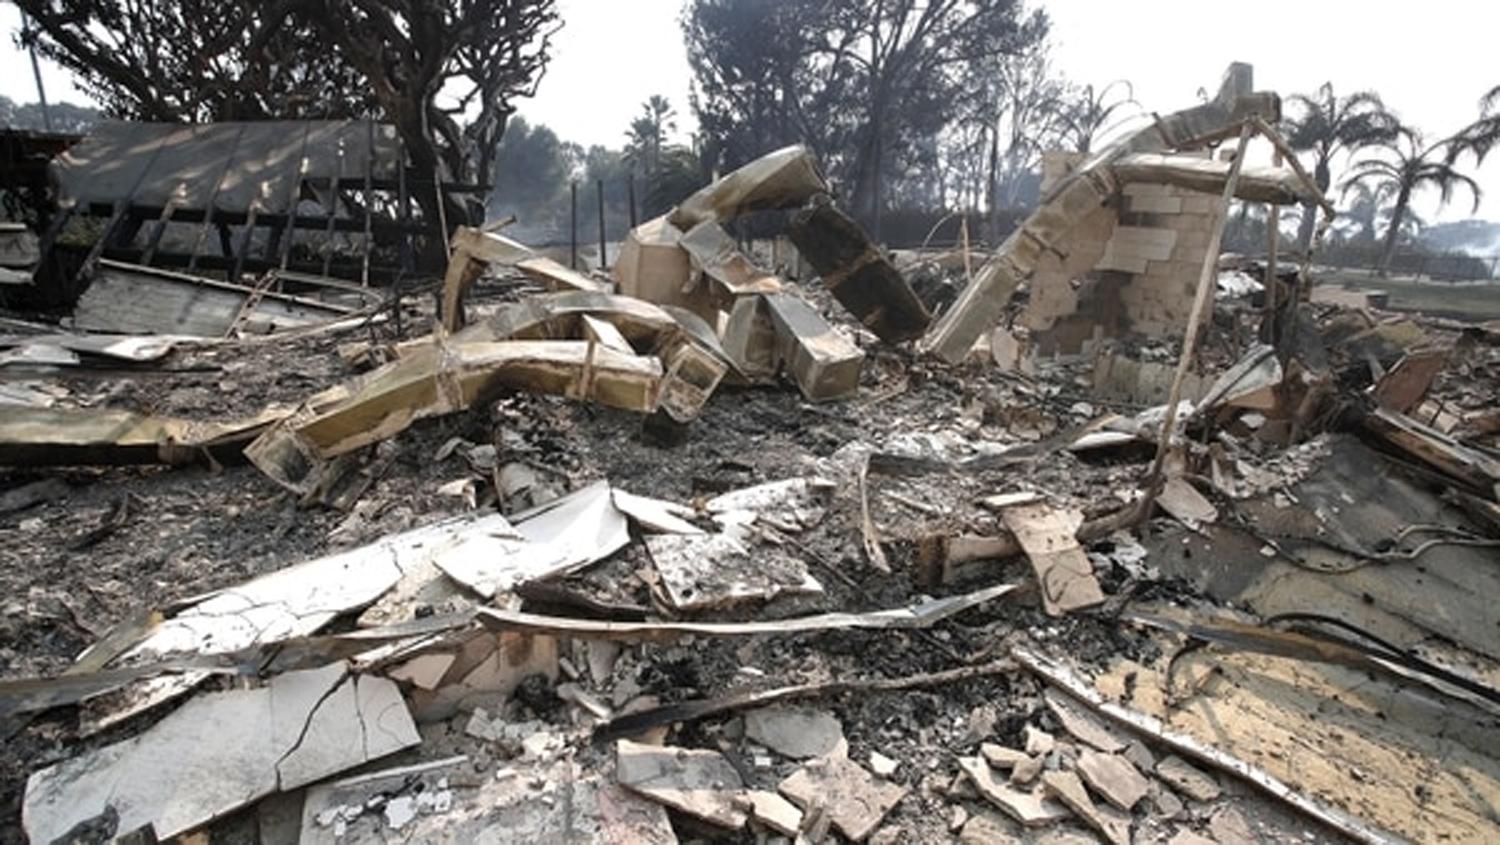 INCENDIOS EN CALIFORNIA. Restos de la casa de Robin Thicke tras el incendio en California.